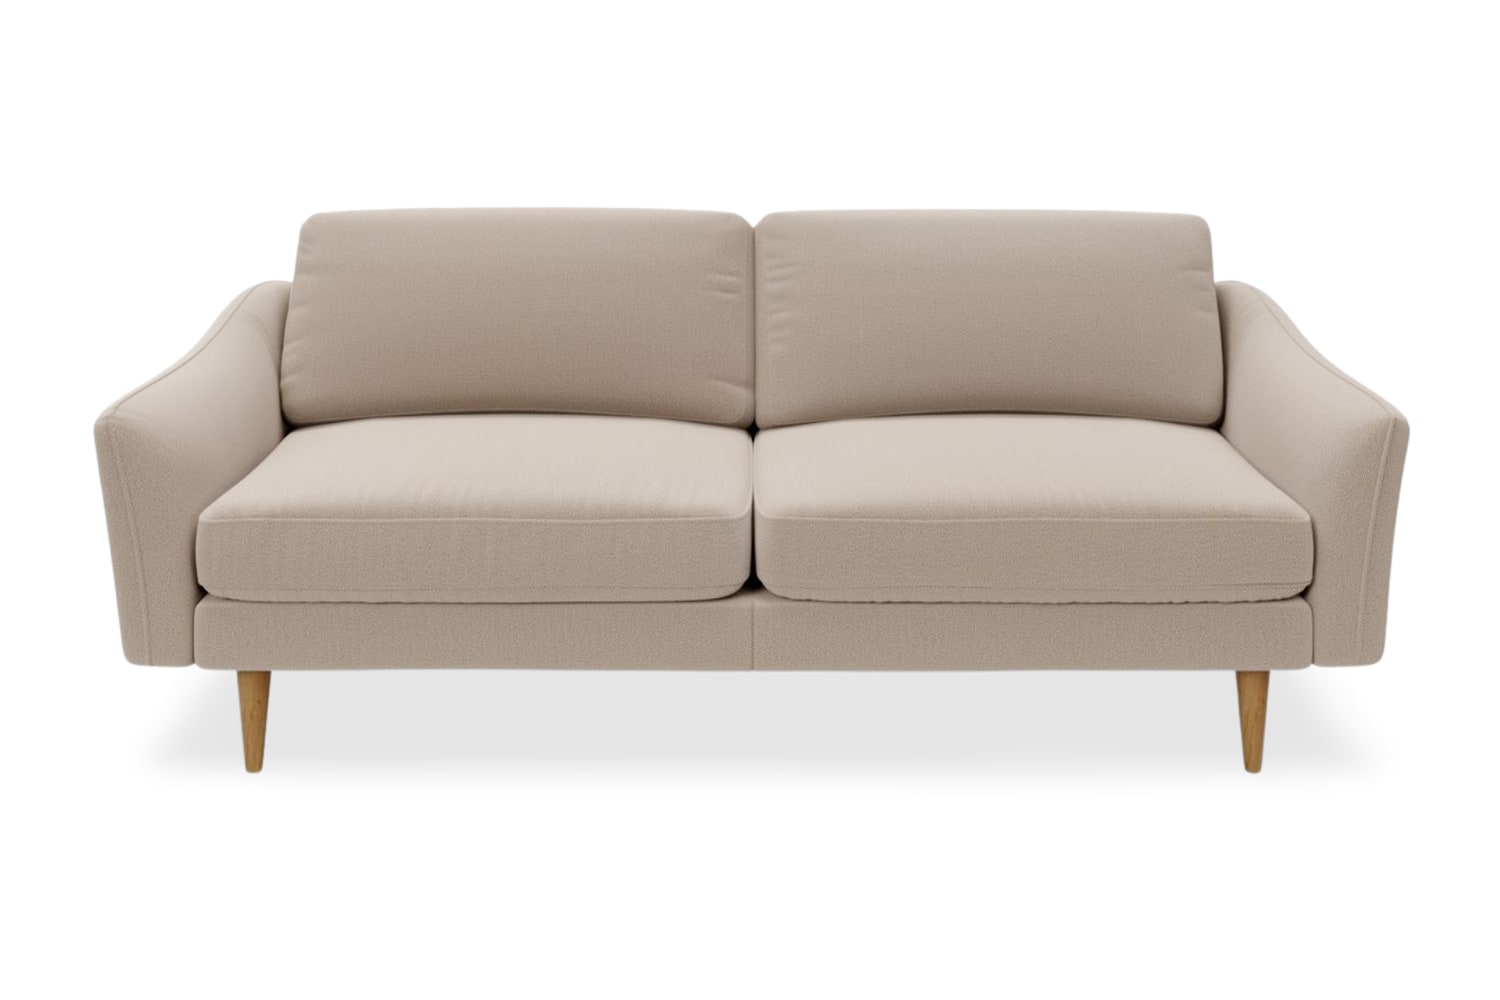 SNUG | The Rebel 3 Seater Sofa in Oatmeal variant_40414890426416